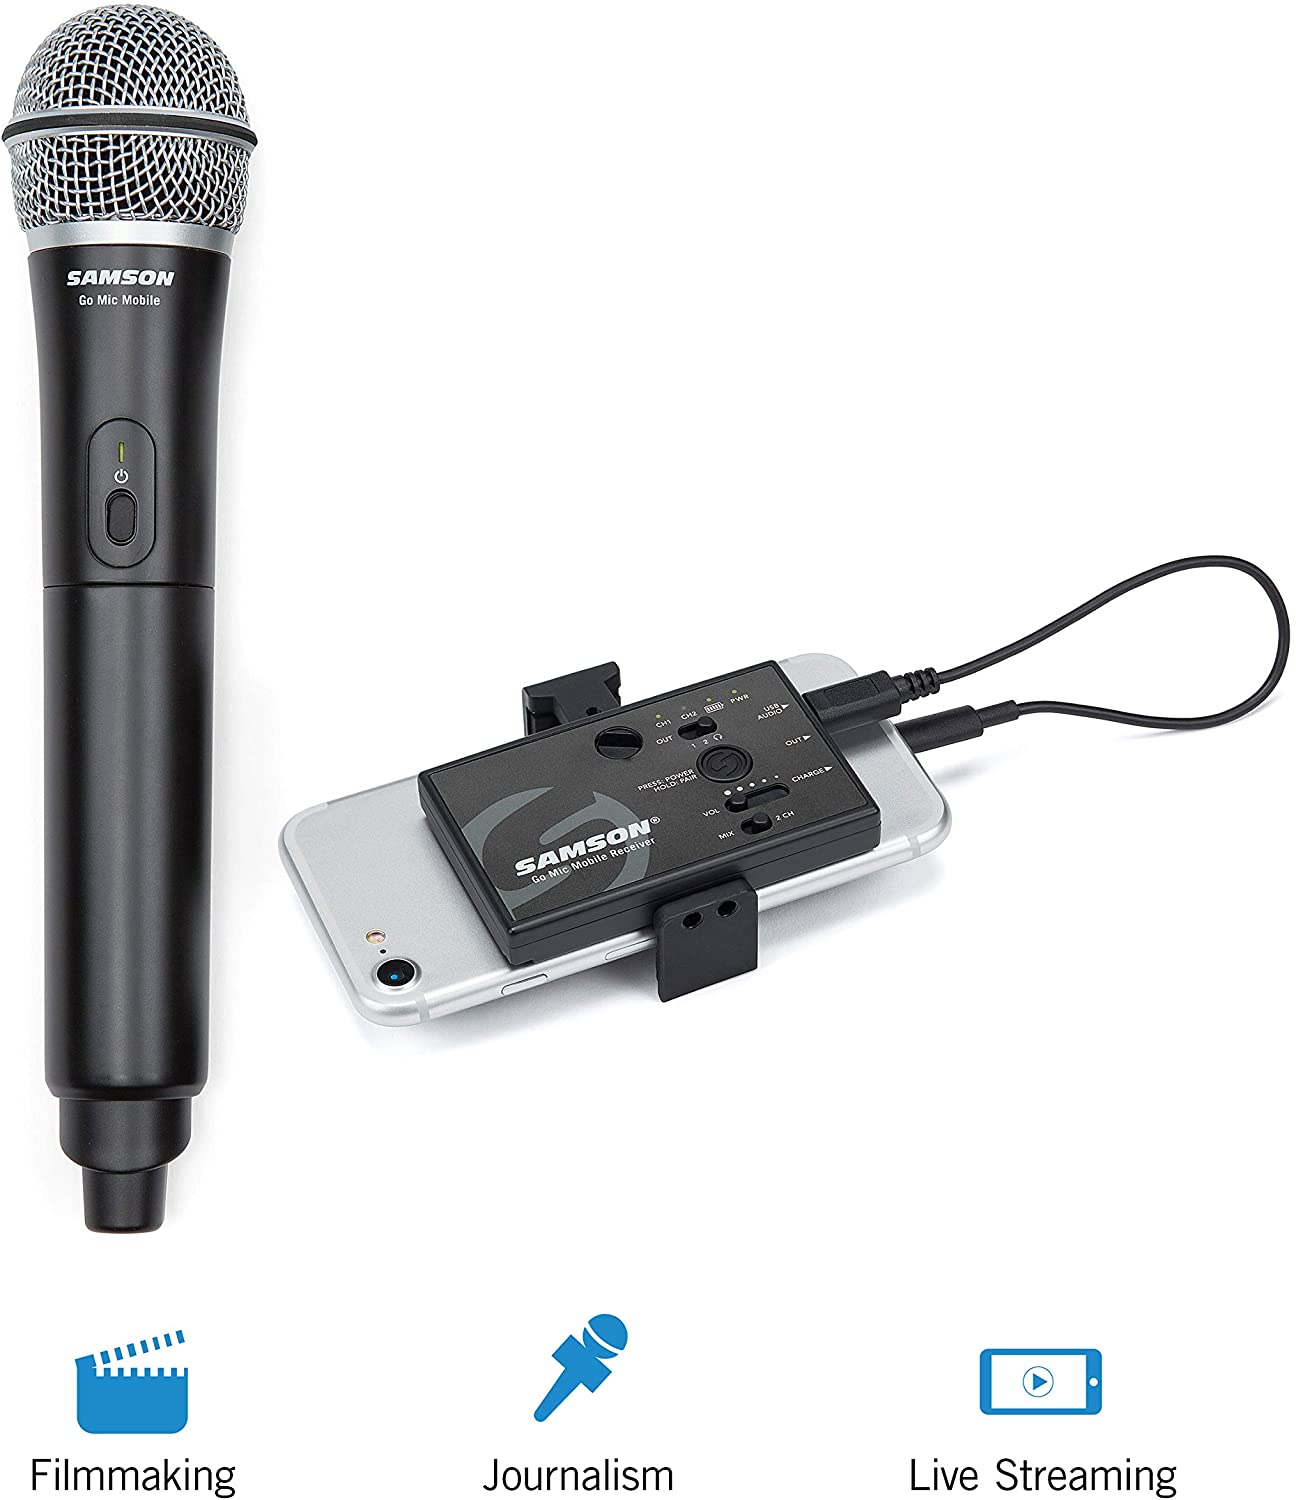 Universal Bluetooth MicrophoneWith Speaker UN-M01B Online at Best